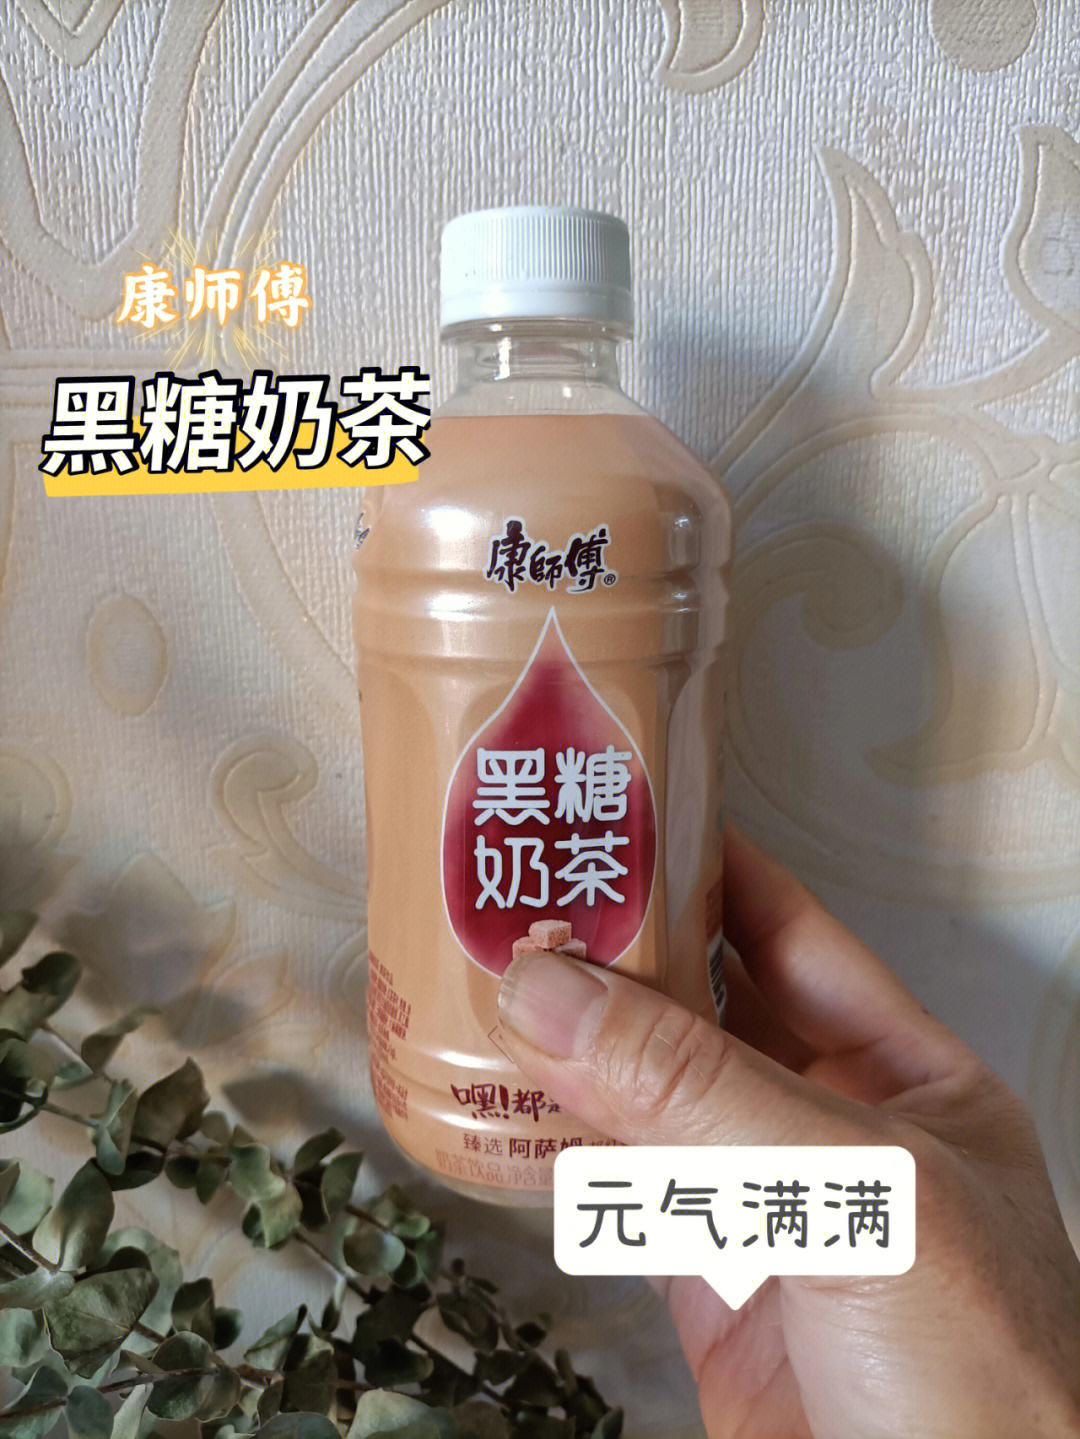 东西就难受,我一般是不喝凉饮的,96zui近买了康师傅黑糖奶茶的饮品